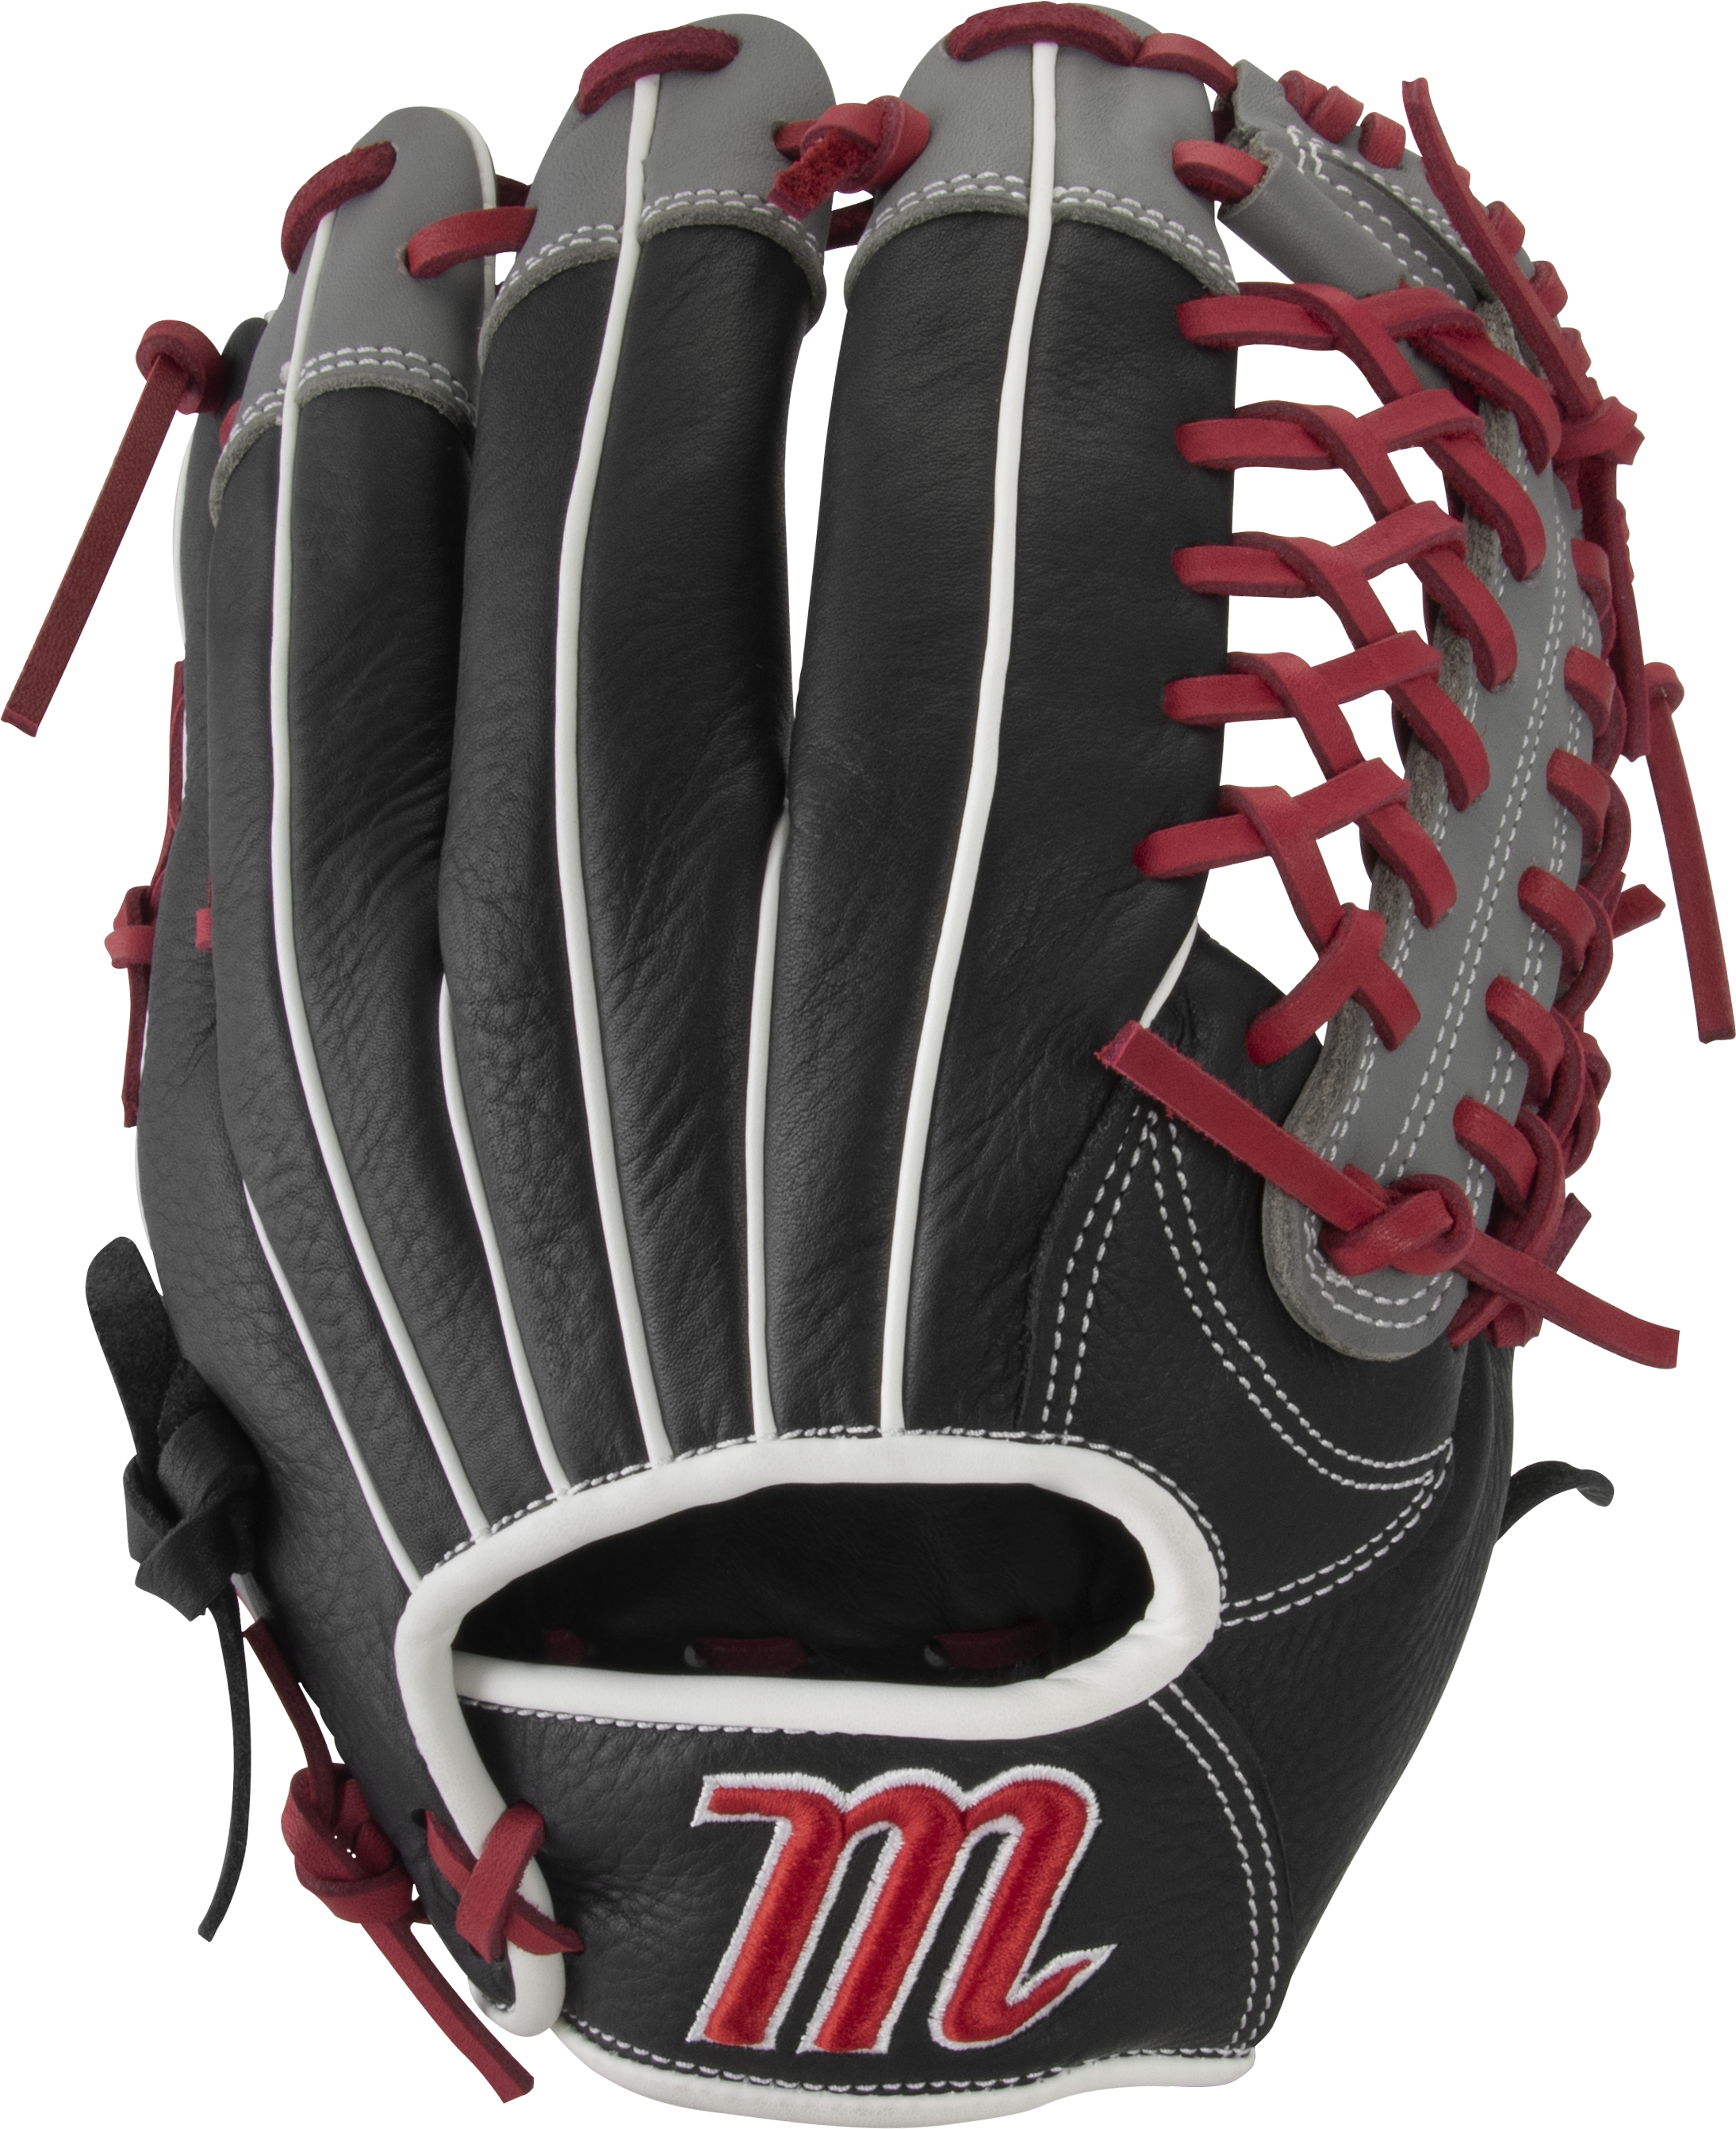 Marucci Vermilion Youth Baseball Glove VR1175Y 11.75 Trap Web Right Hand Throw